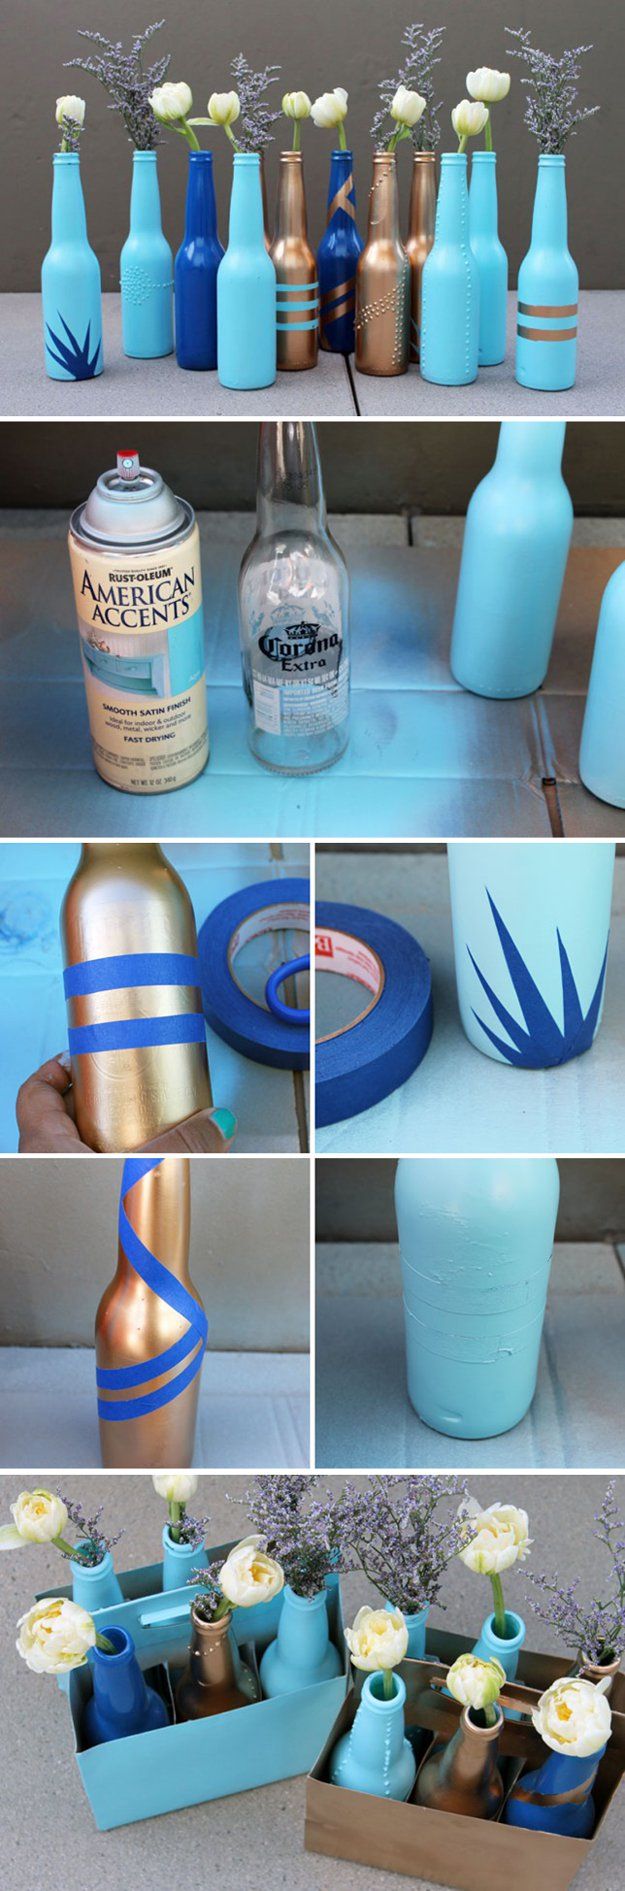 glass-bottle-art-ideas14